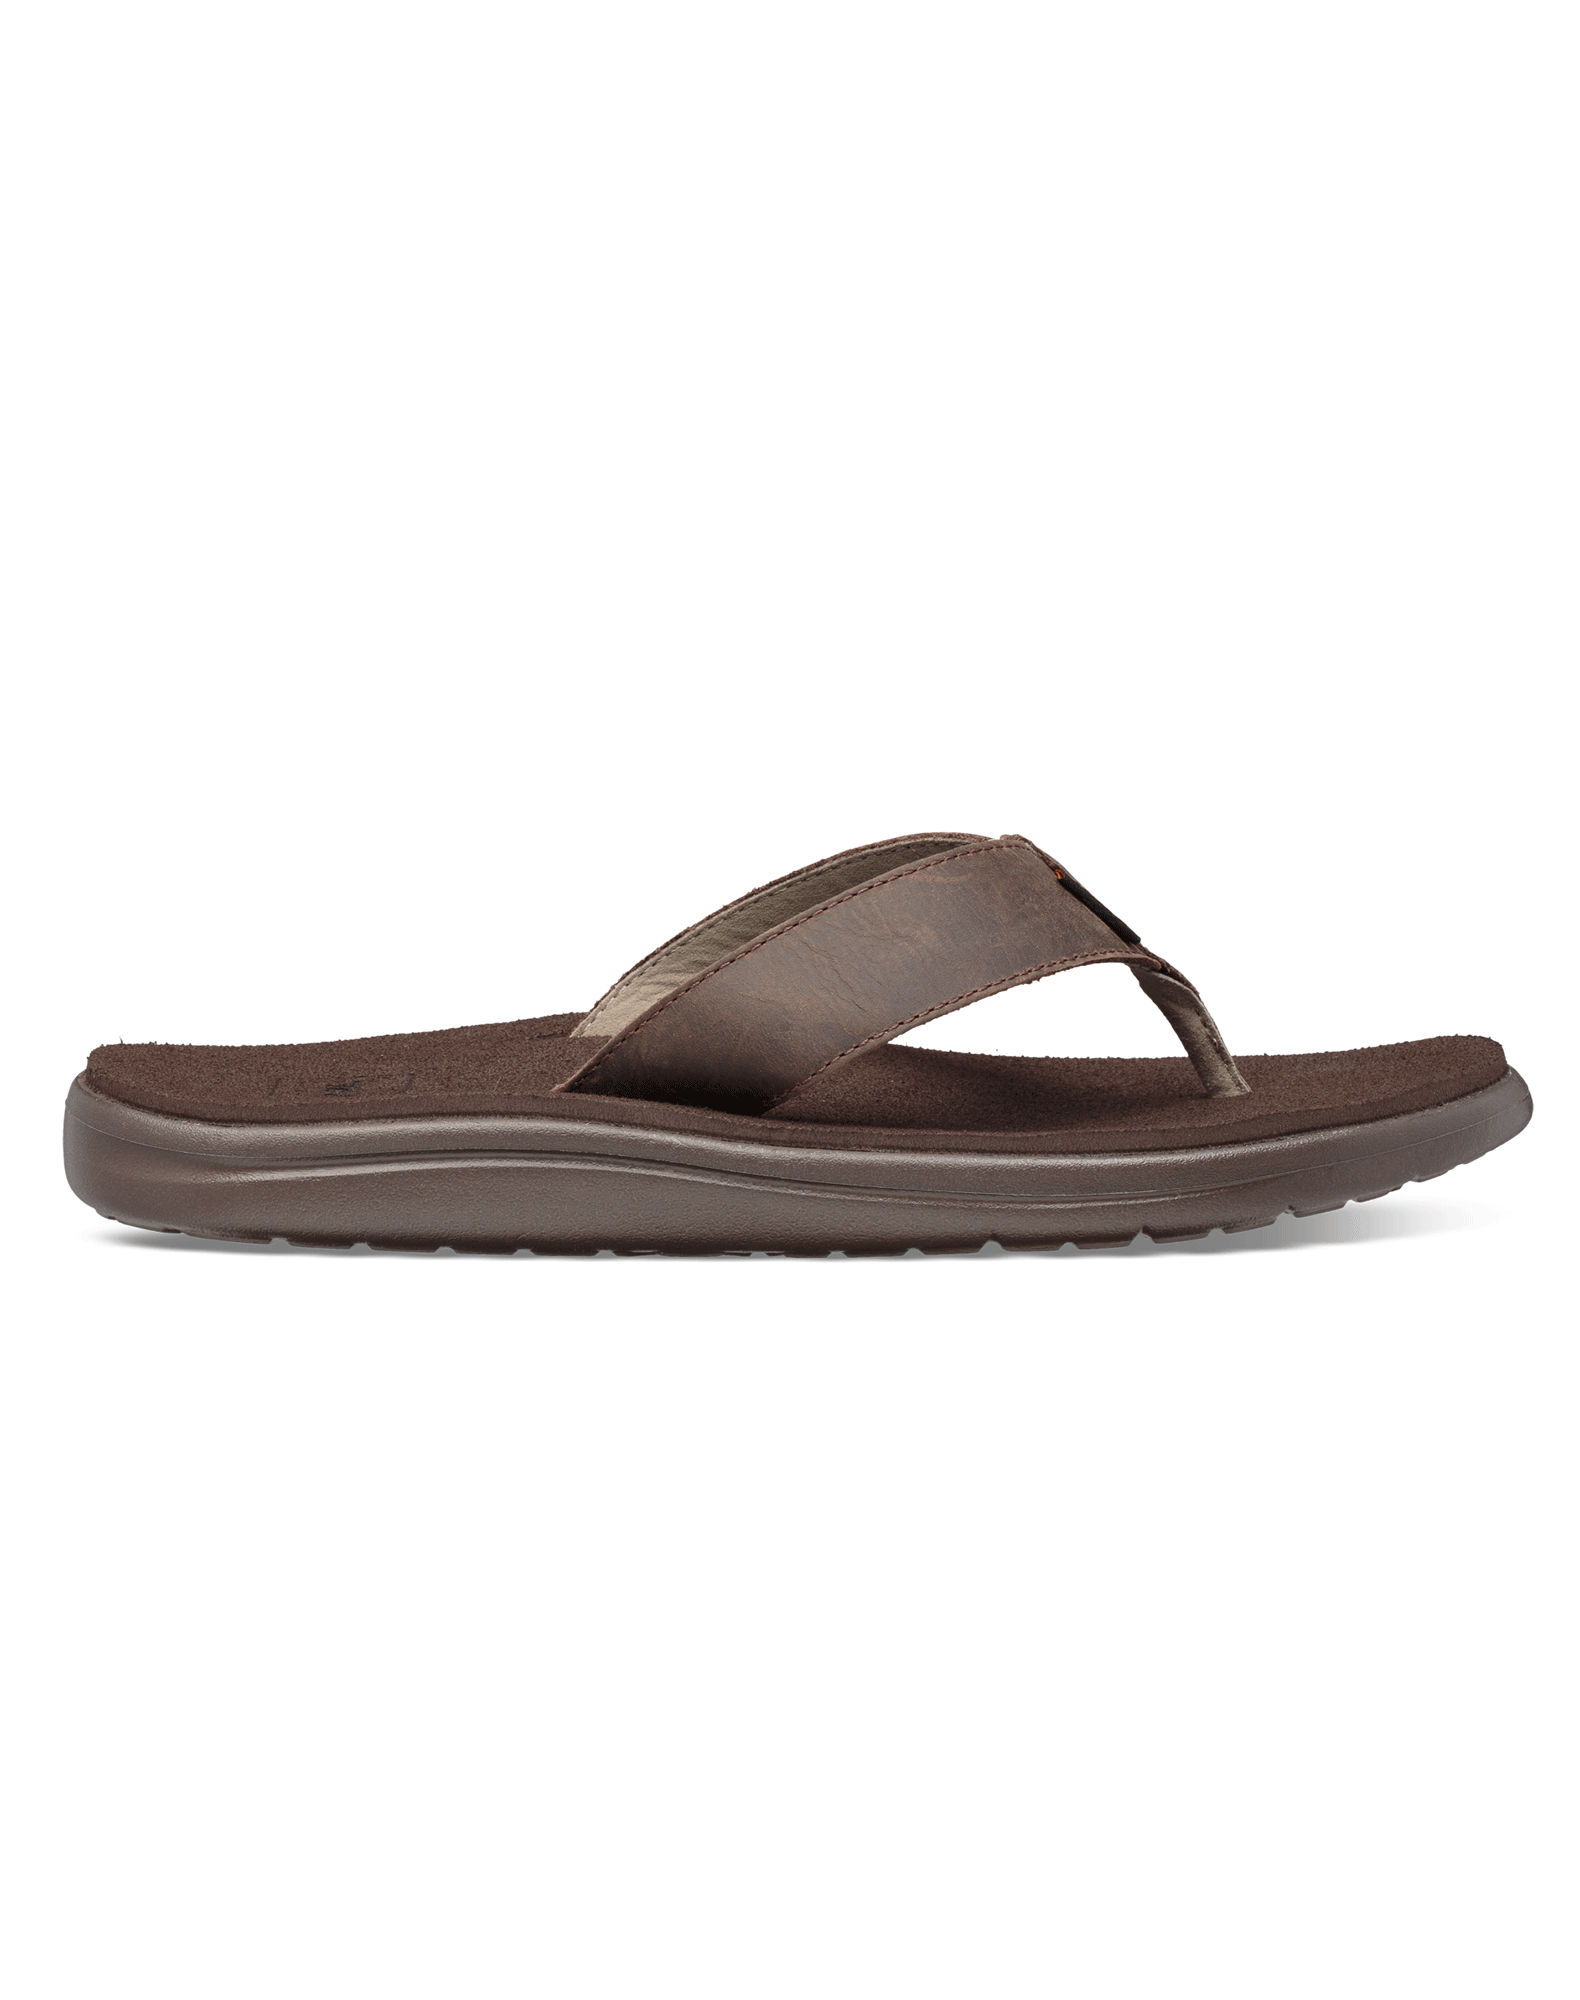 Køb TEVA Voya Flip Leather sandaler til herre brun